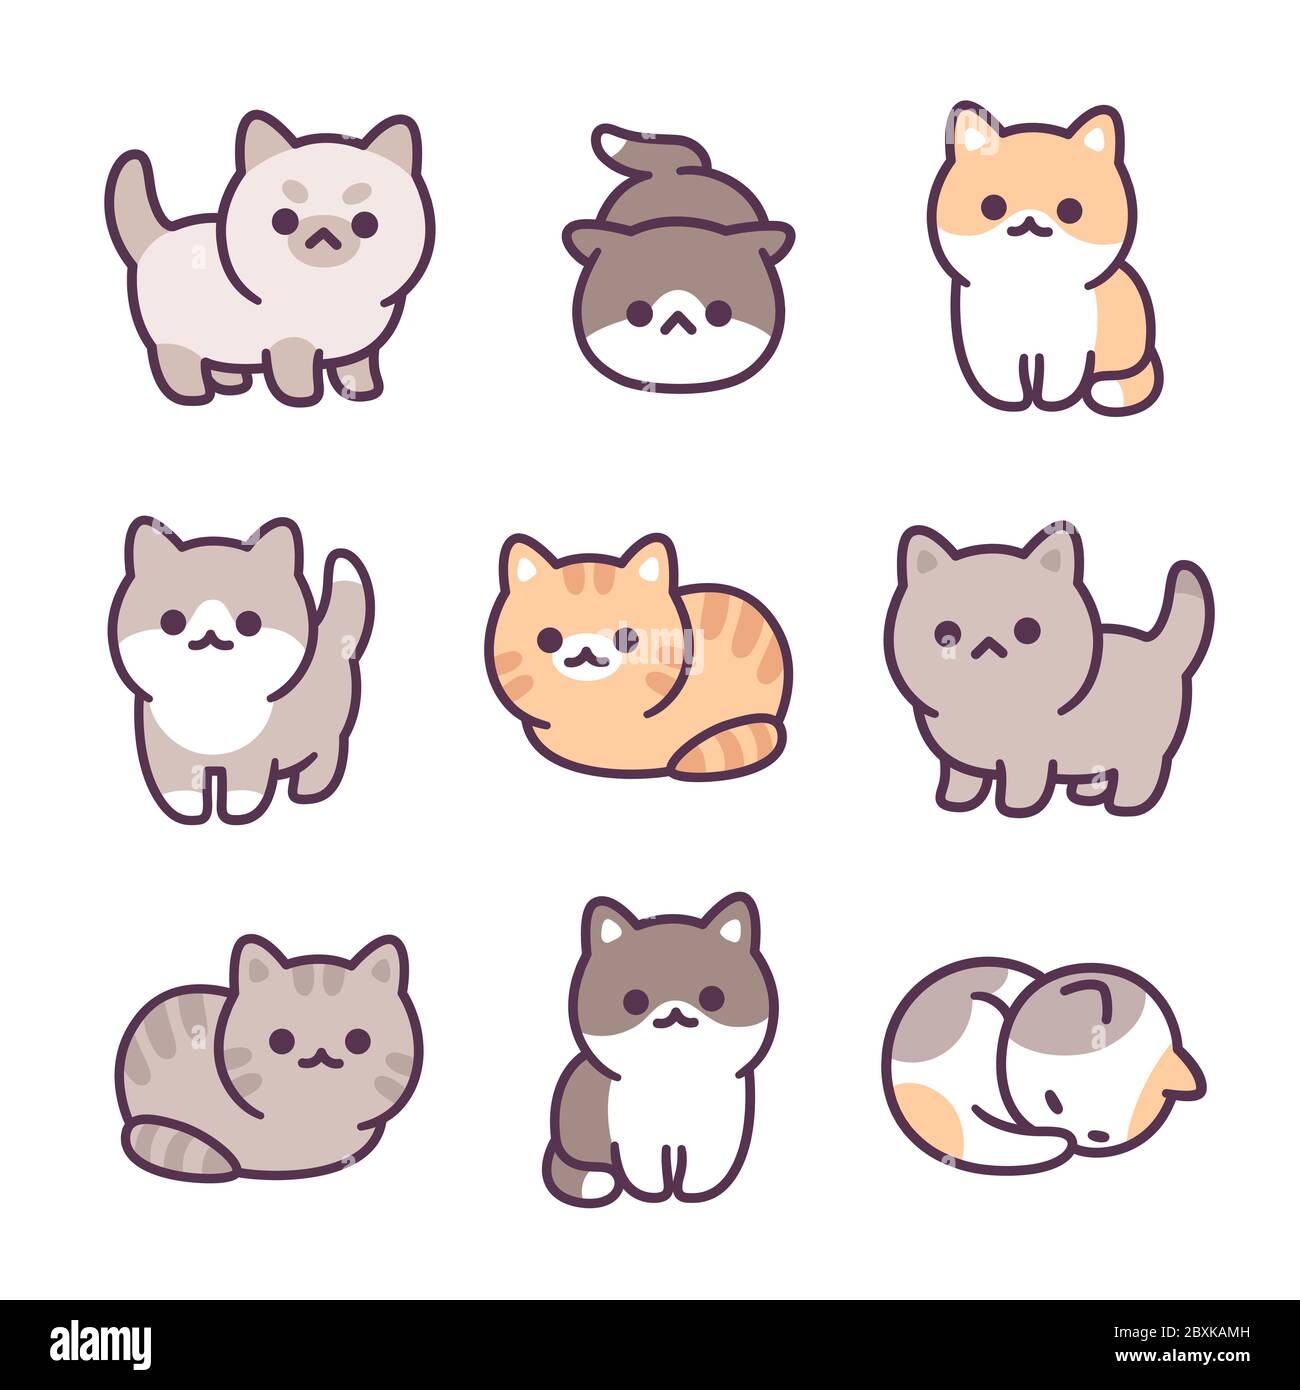 Jeu d'illustrations de petits chatons dessinés à la main. Adorables petits chats, différentes races et poses. Style simple de style kawaii. Illustration de Vecteur